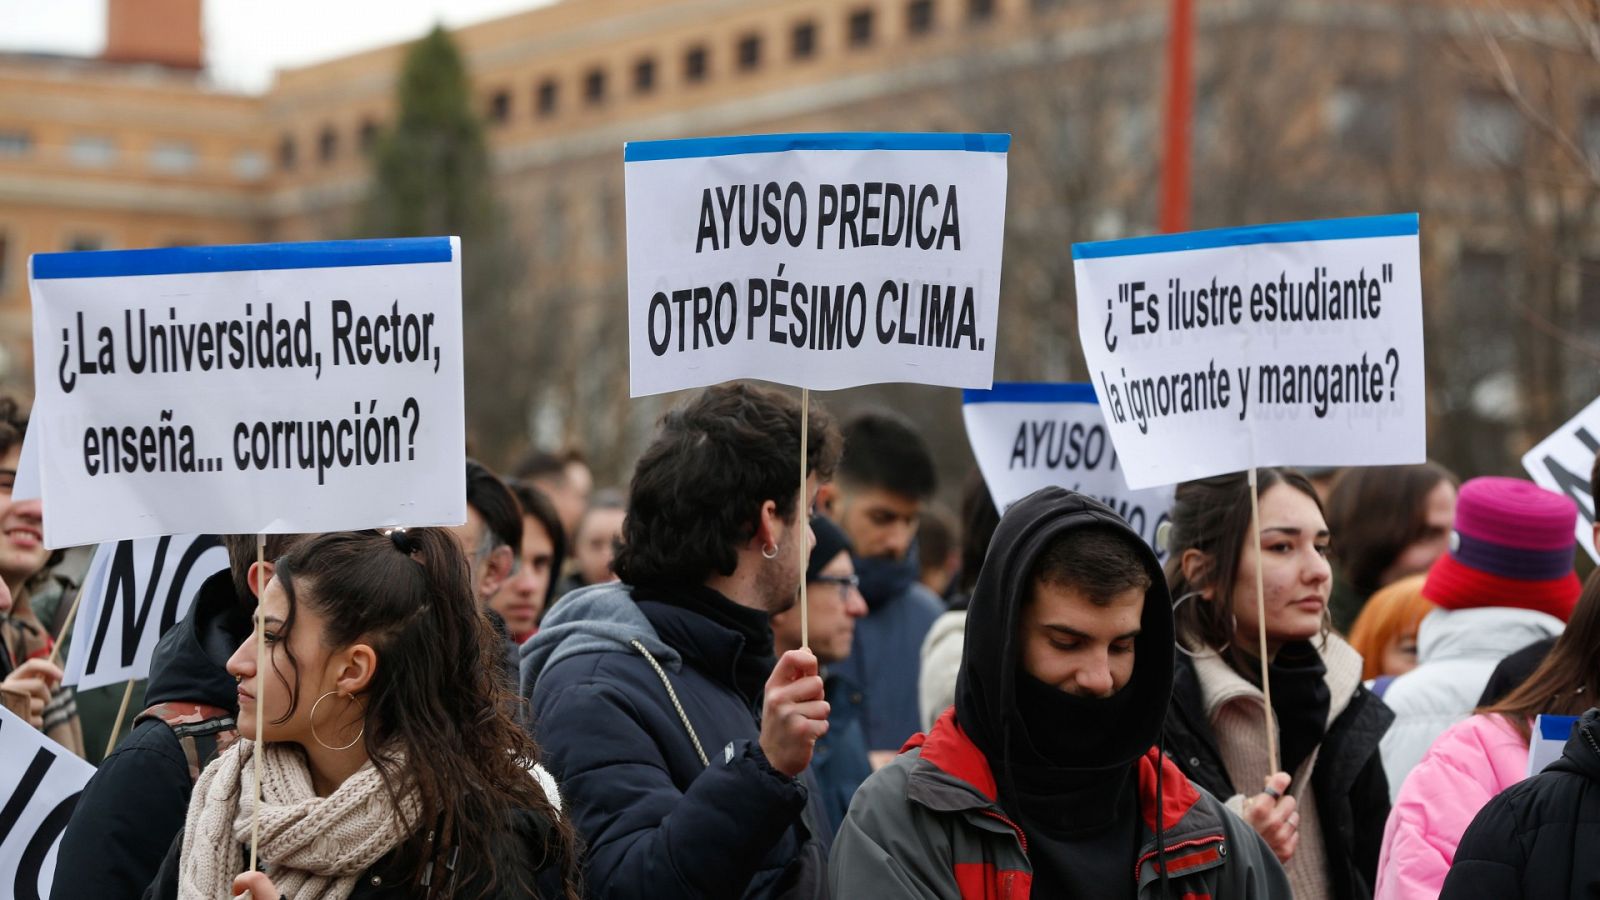 Decenas de jóvenes protestan contra Ayuso en la Complutense: "Fuera fascistas, las ilustres están fuera"   